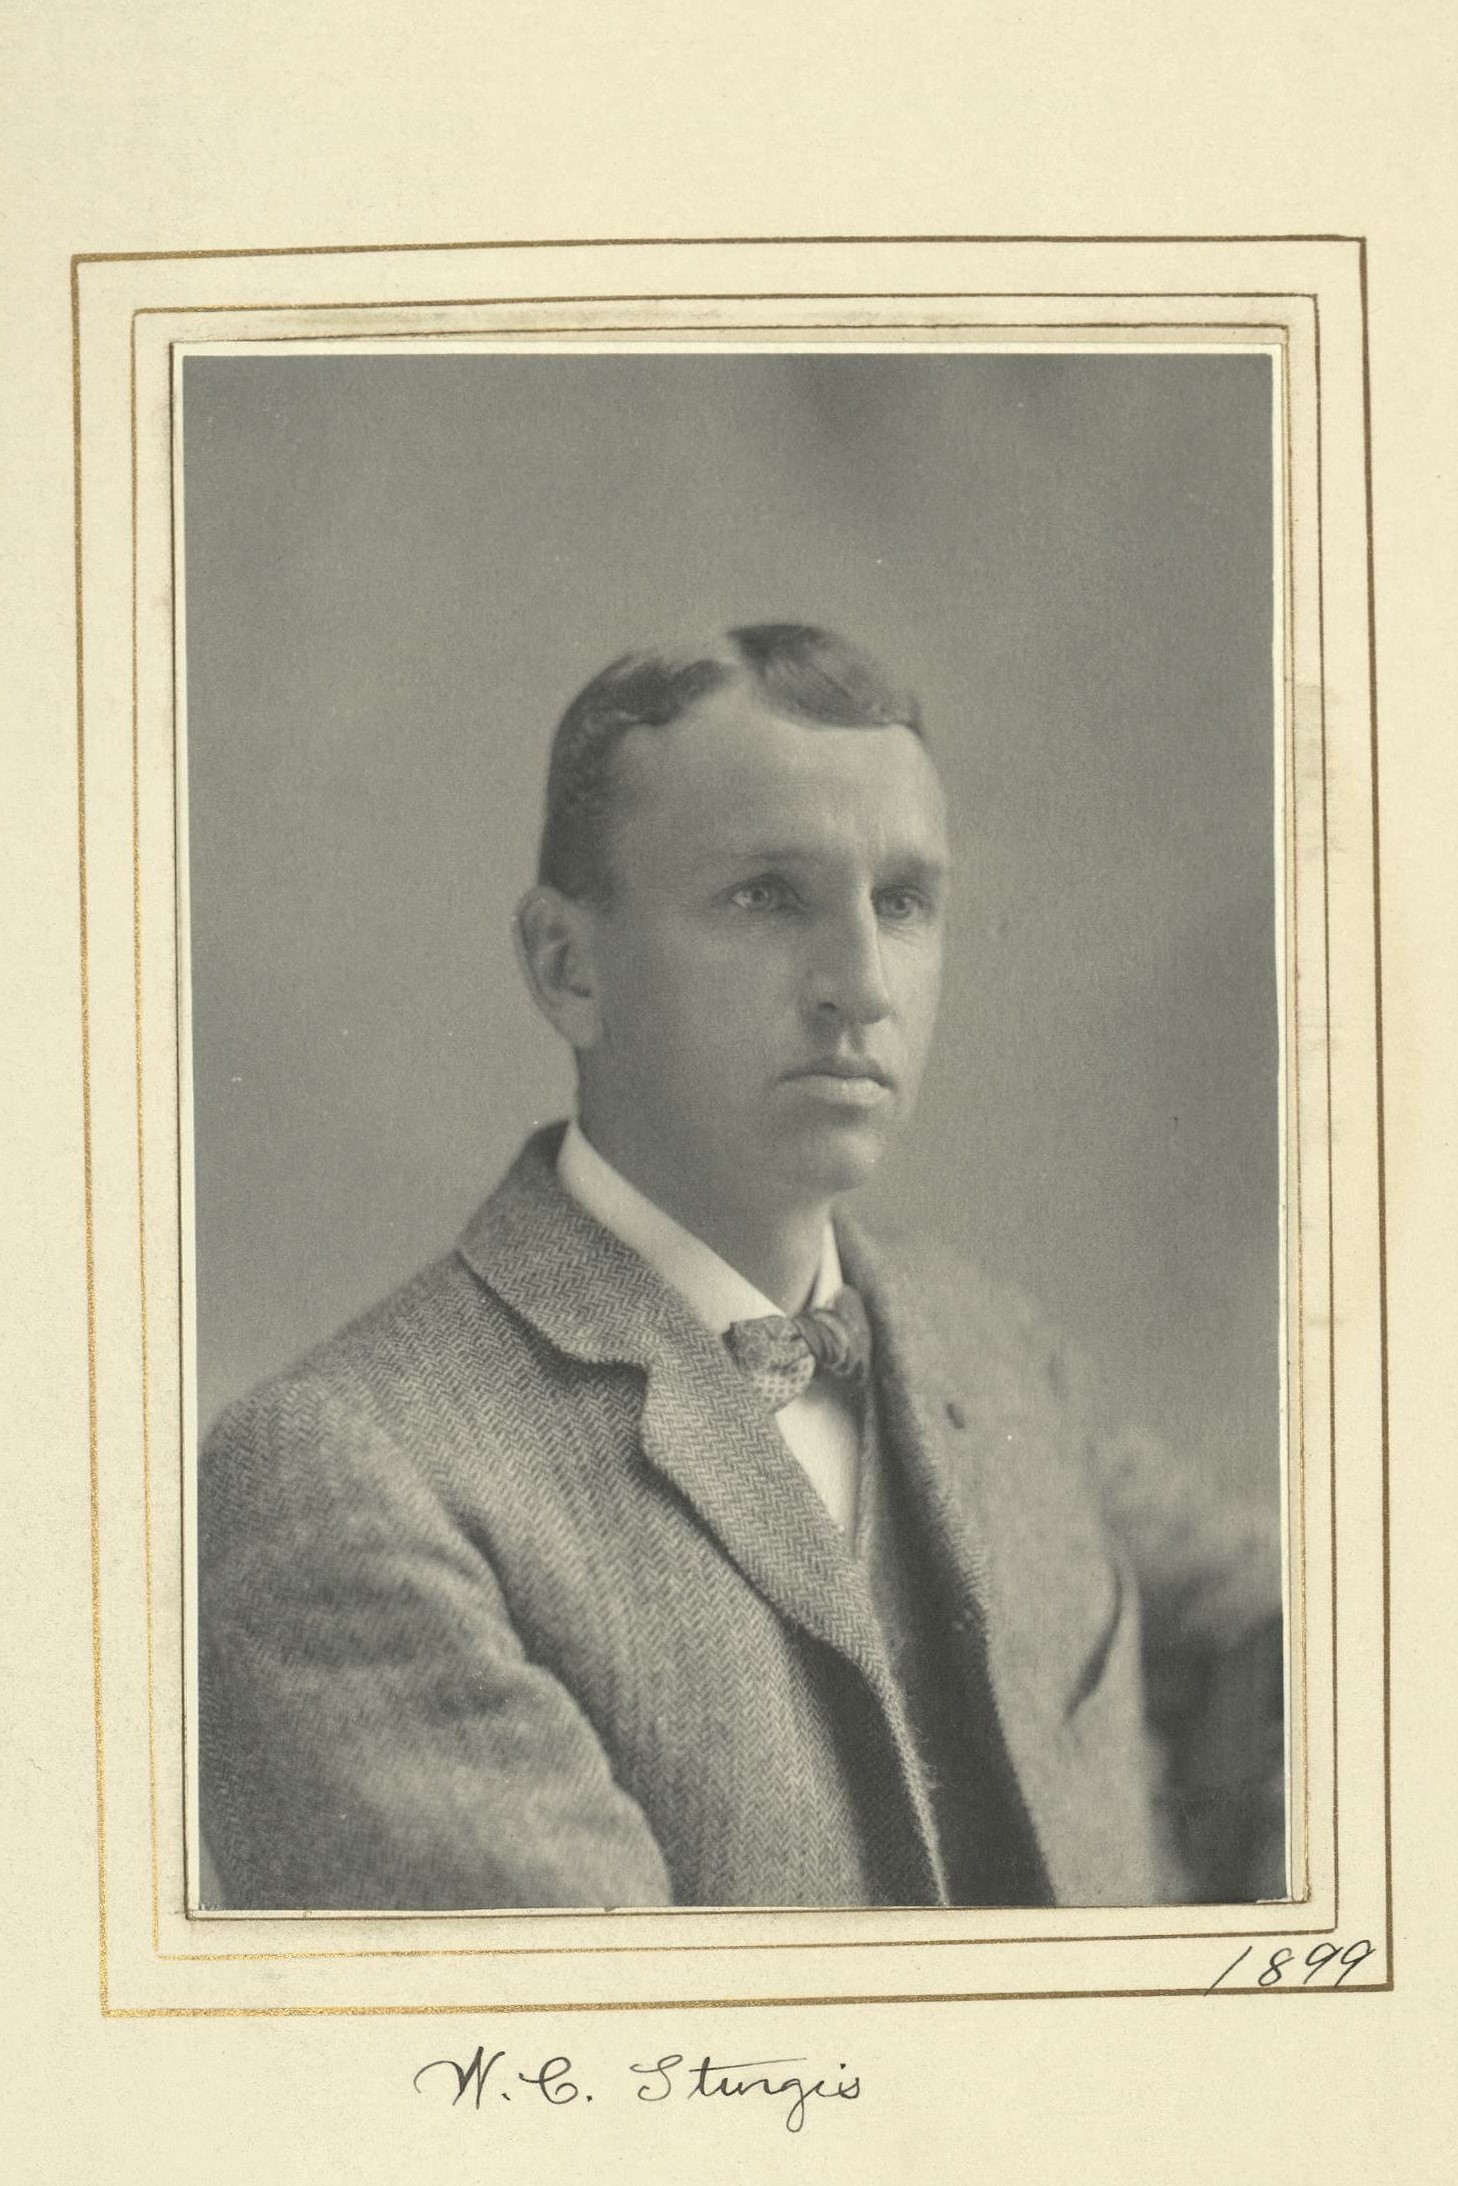 Member portrait of William C. Sturgis